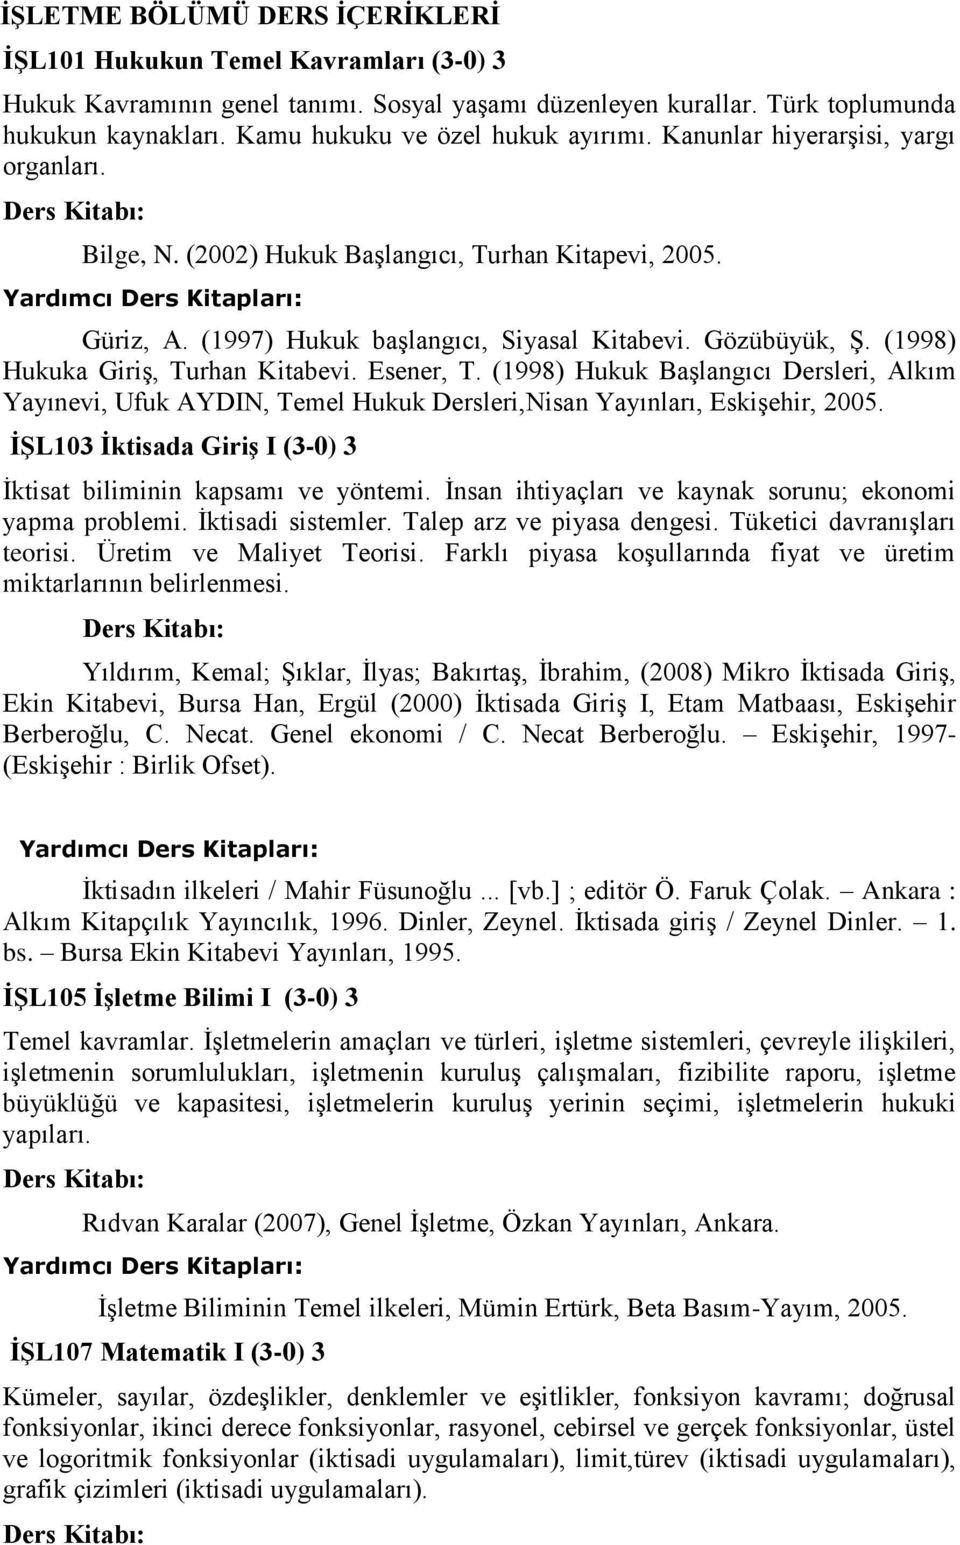 (1998) Hukuka Giriş, Turhan Kitabevi. Esener, T. (1998) Hukuk Başlangıcı Dersleri, Alkım Yayınevi, Ufuk AYDIN, Temel Hukuk Dersleri,Nisan Yayınları, Eskişehir, 2005.